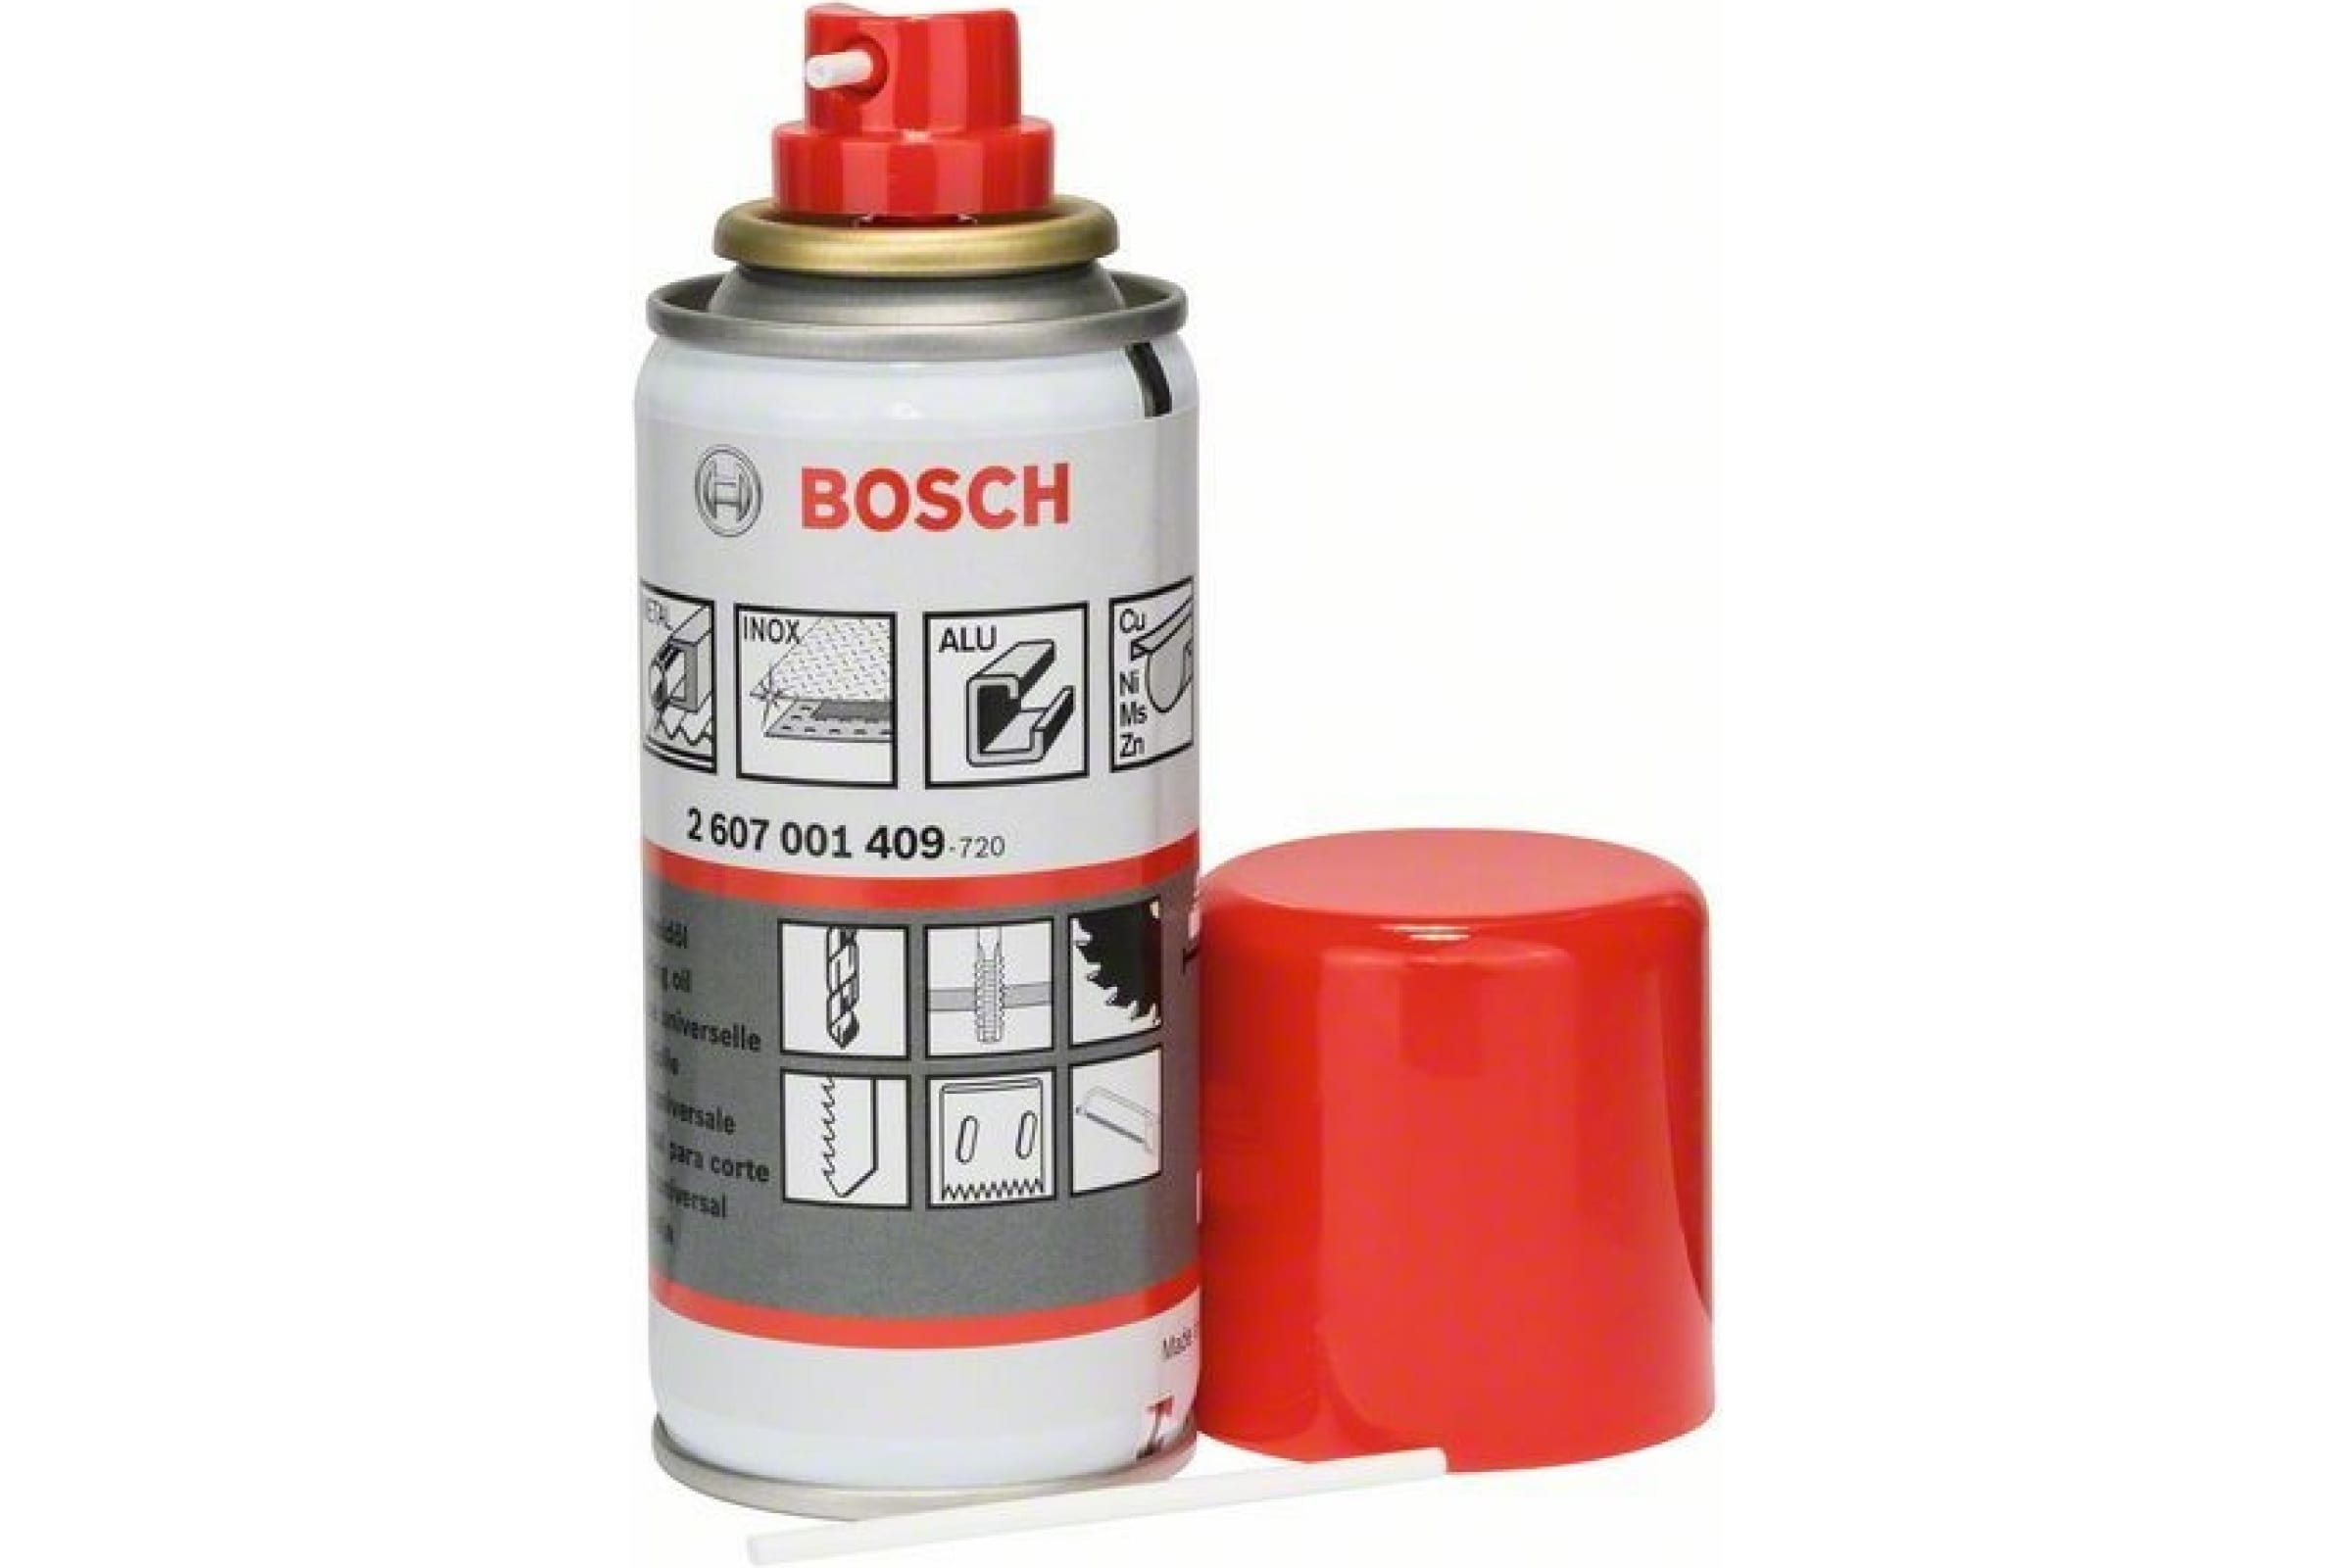 Bosch Универсальная смазка-спрей 100 мл 2607001409